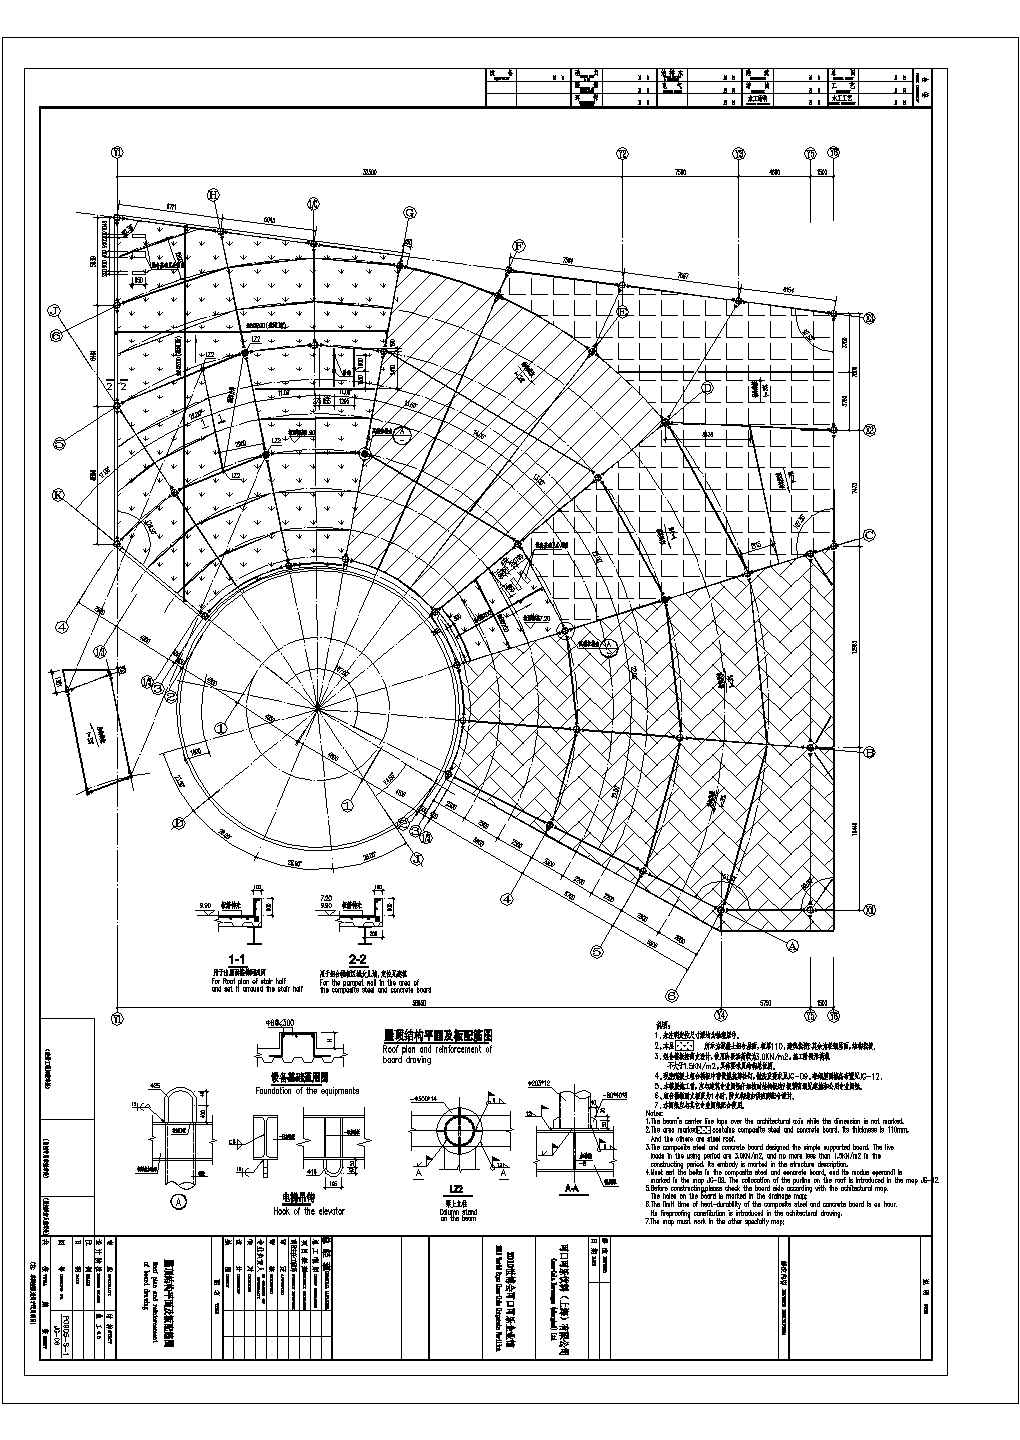 某1894.4平米展览展馆CAD建筑施工图 结构施工图结构图(梁柱)